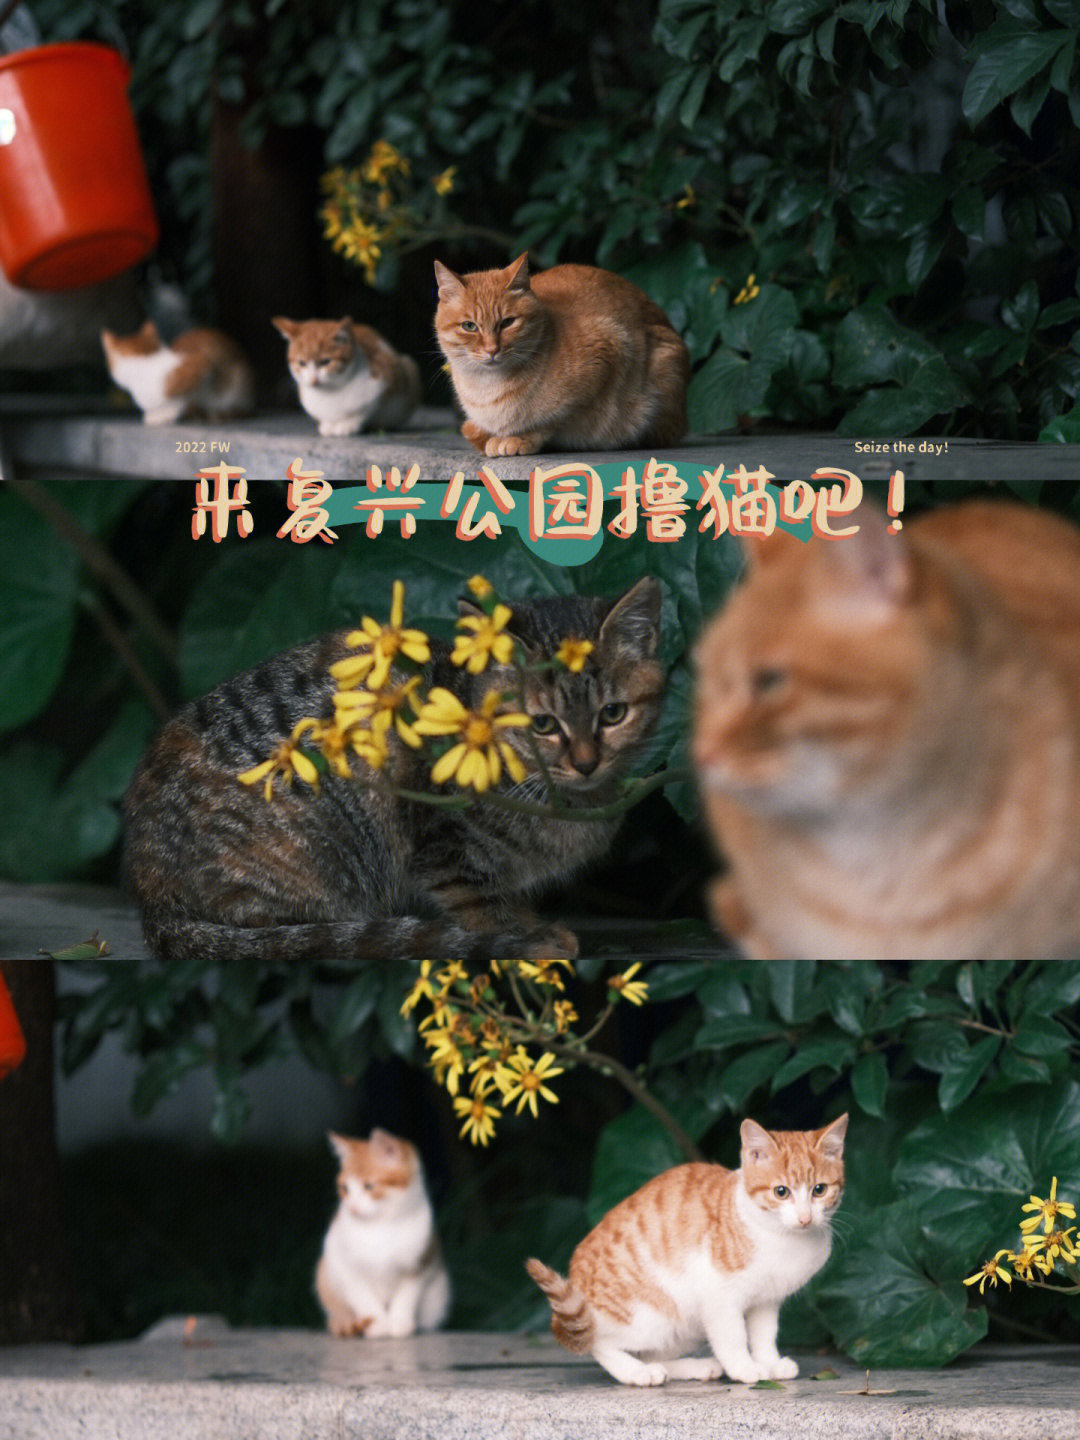 上海复兴公园这个公园含猫量也太高了